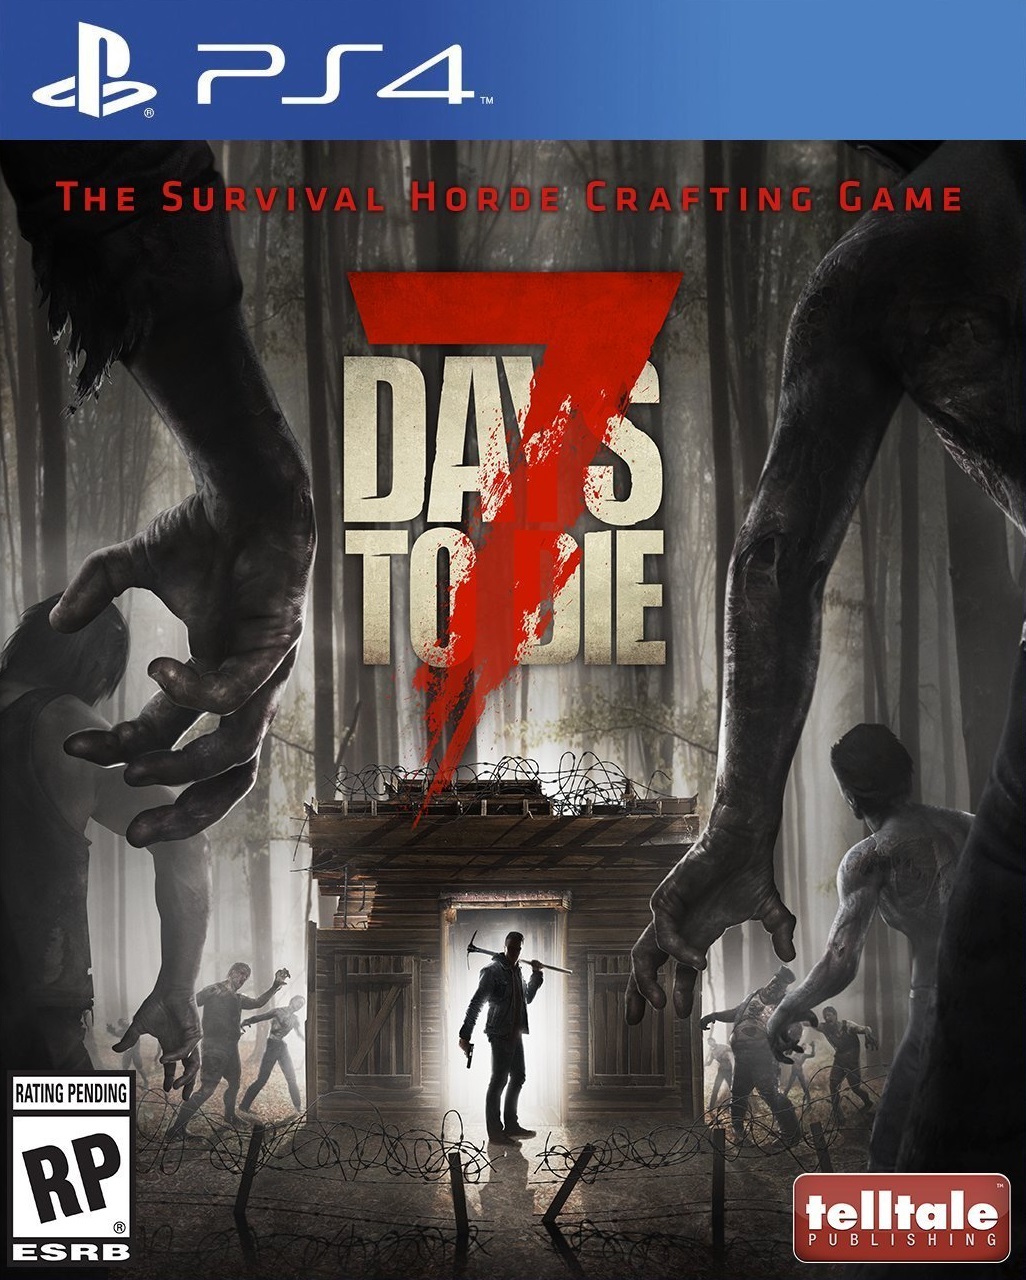 jaquette du jeu vidéo 7 Days to Die